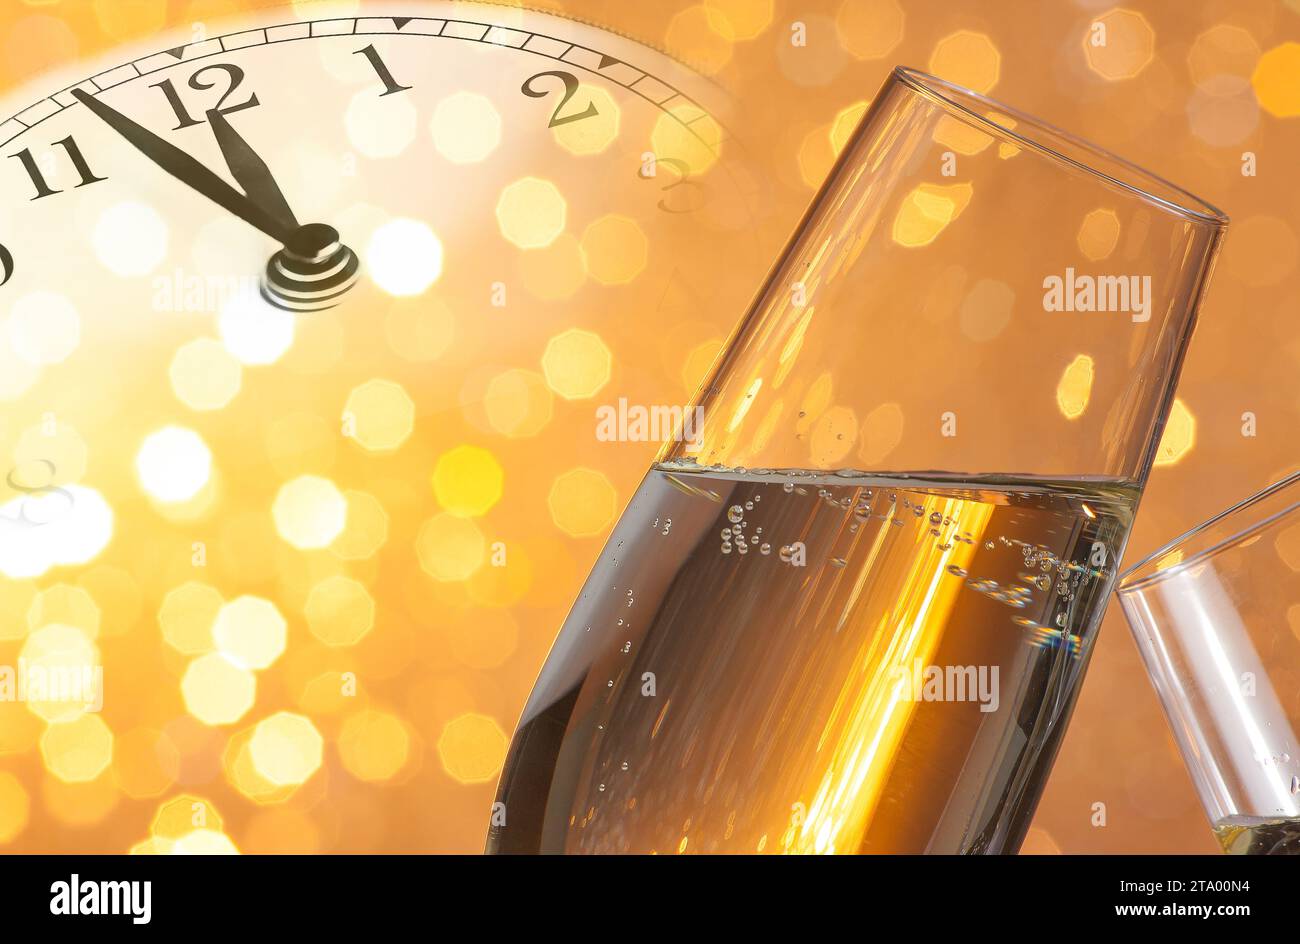 flauti di champagne con bollicine dorate fanno il tifo su sfondo bokeh chiaro dorato con la sveglia vintage che mostra il concetto di mezzanotte, felice anno nuovo Foto Stock